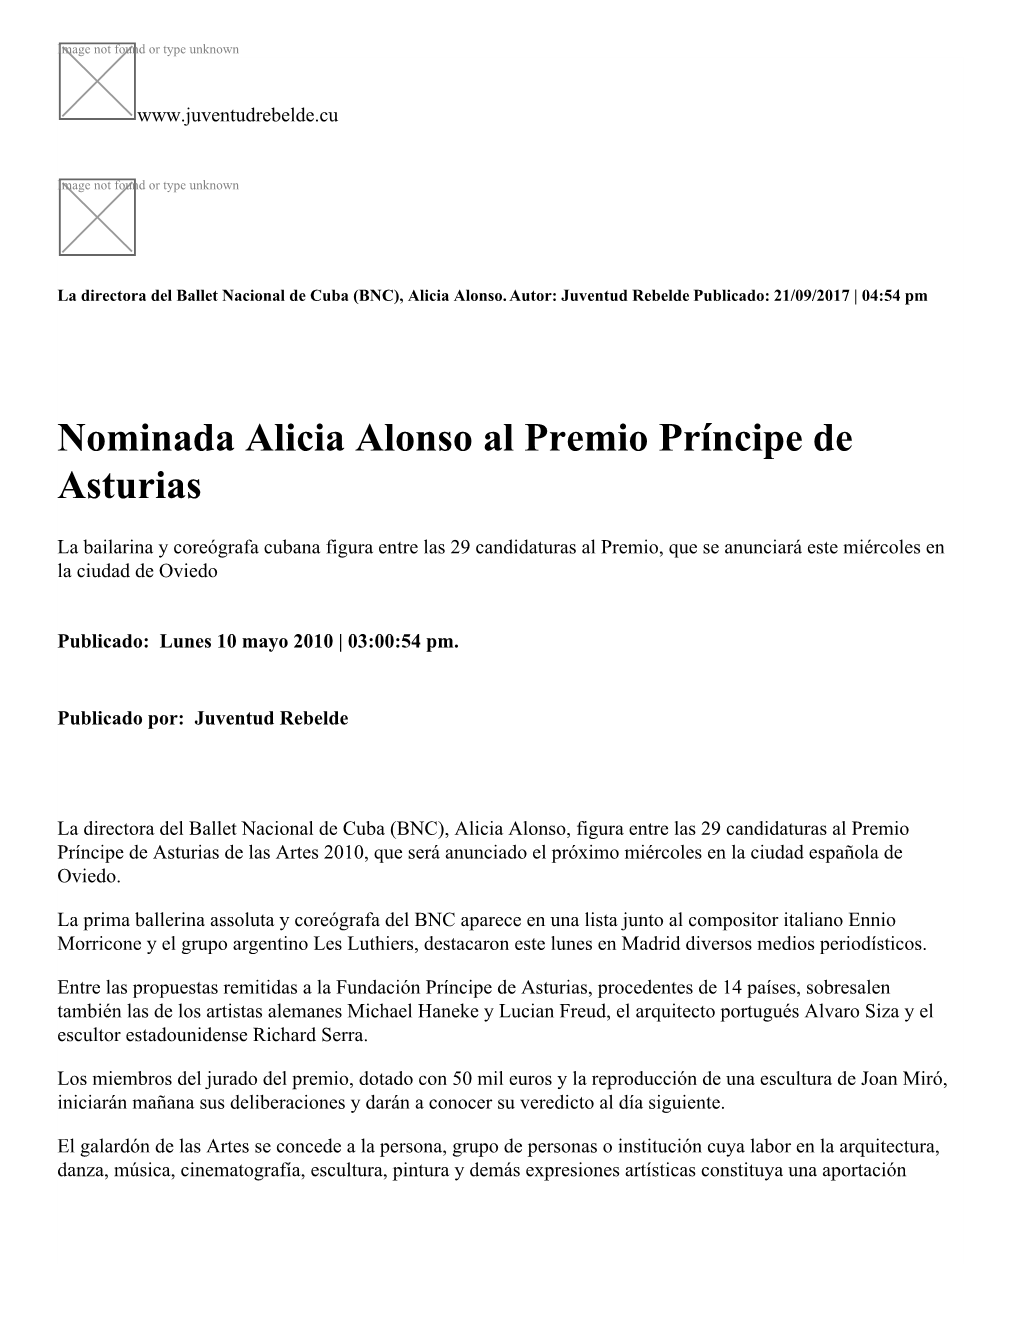 Nominada Alicia Alonso Al Premio Príncipe De Asturias